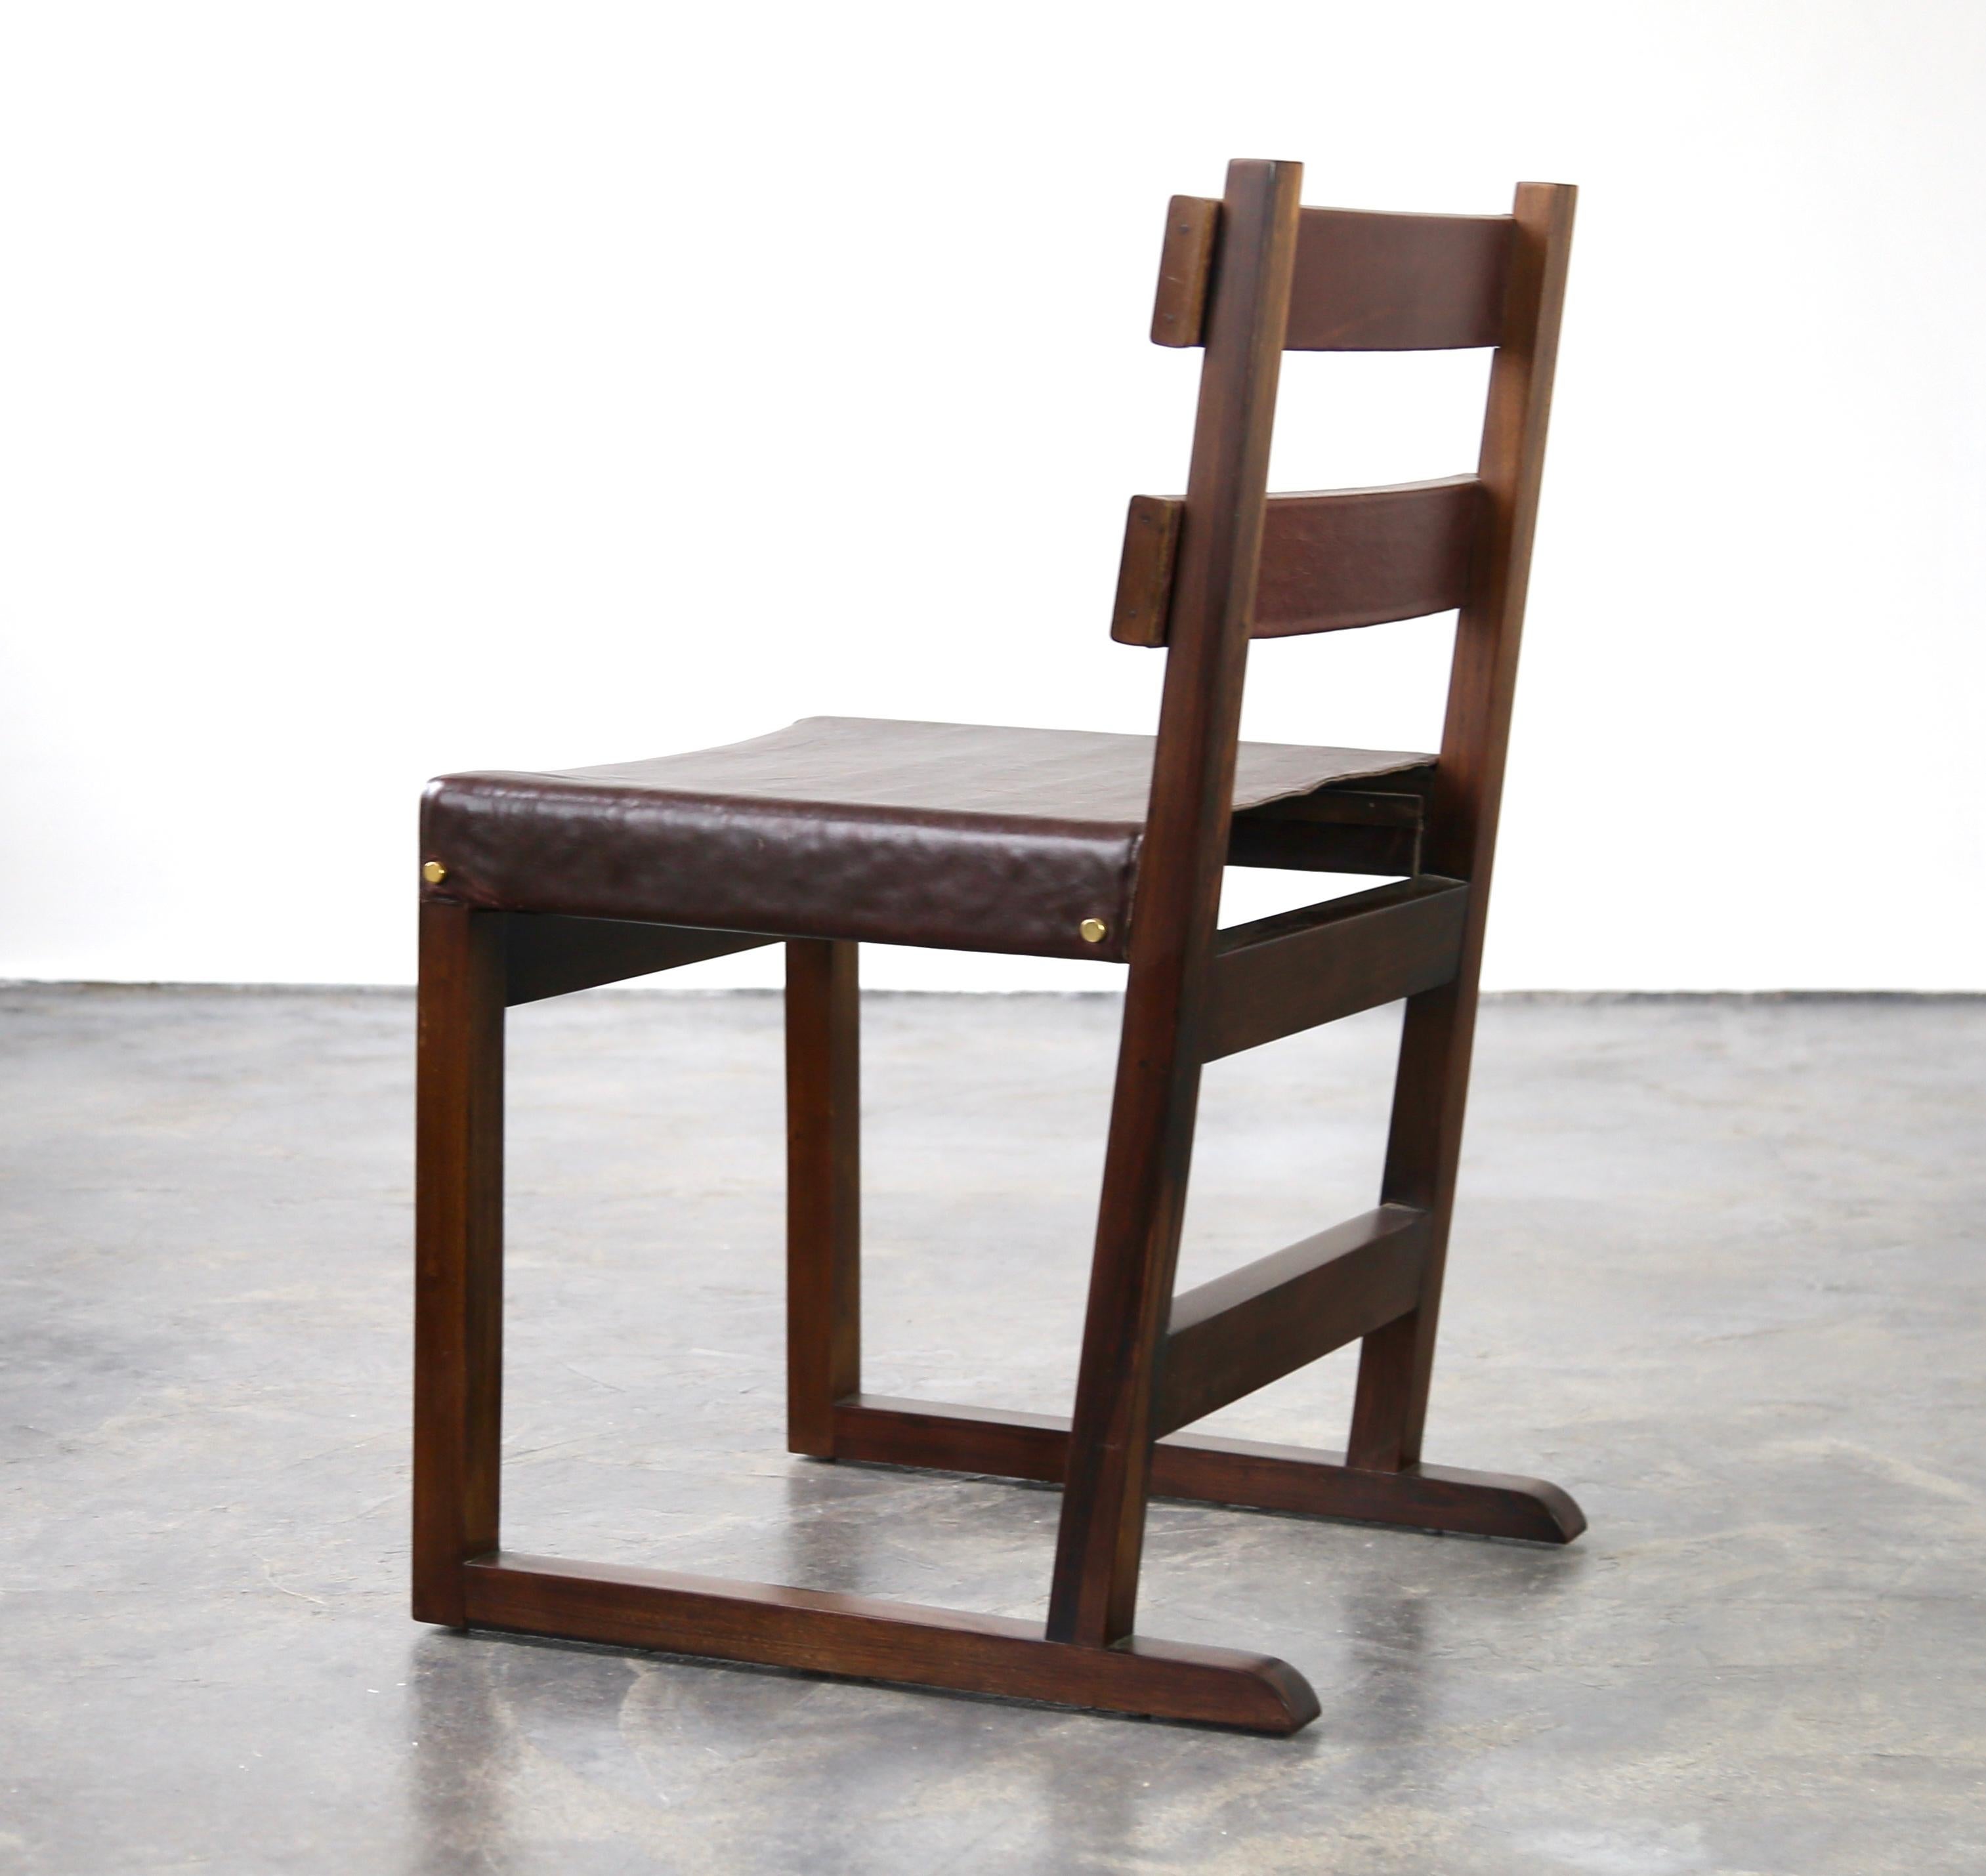 Chaise à dossier incliné en cuir souple et enveloppé Piero de Costantini

Les dimensions sont les suivantes : 19